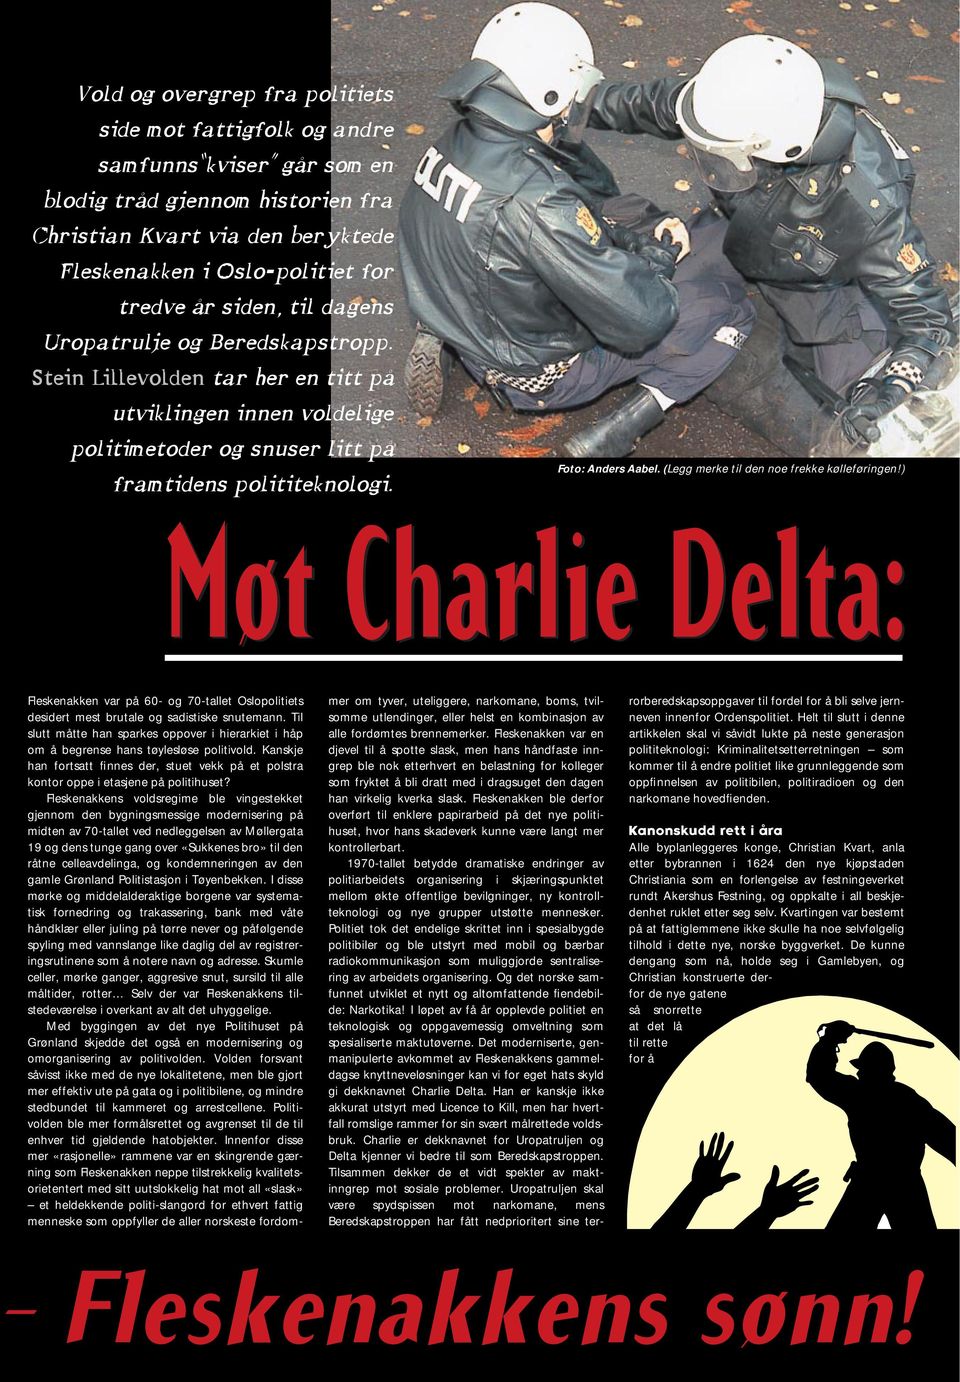 (Legg merke til den noe frekke kølleføringen!) Møt Charlie Delta: Fleskenakken var på 60- og 70-tallet Oslopolitiets desidert mest brutale og sadistiske snutemann.